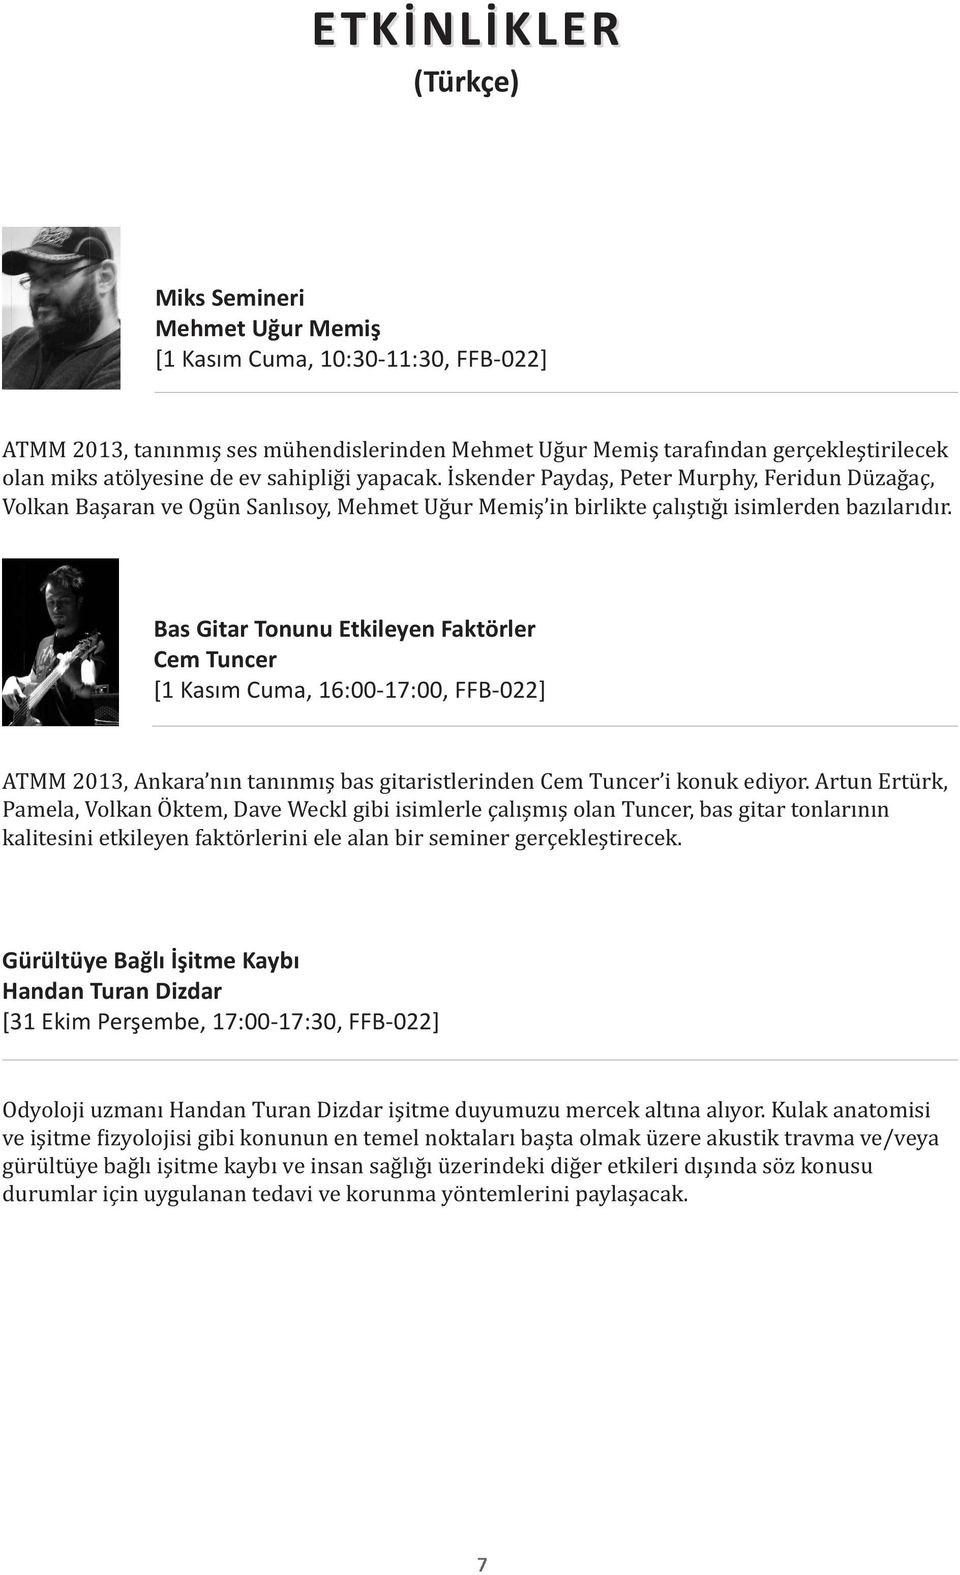 Bas Gitar Tonunu Etkileyen Faktörler Cem Tuncer [1 Kasım Cuma, 16:00-17:00, FFB-022] ATMM 2013, Ankara nın tanınmış bas gitaristlerinden Cem Tuncer i konuk ediyor.